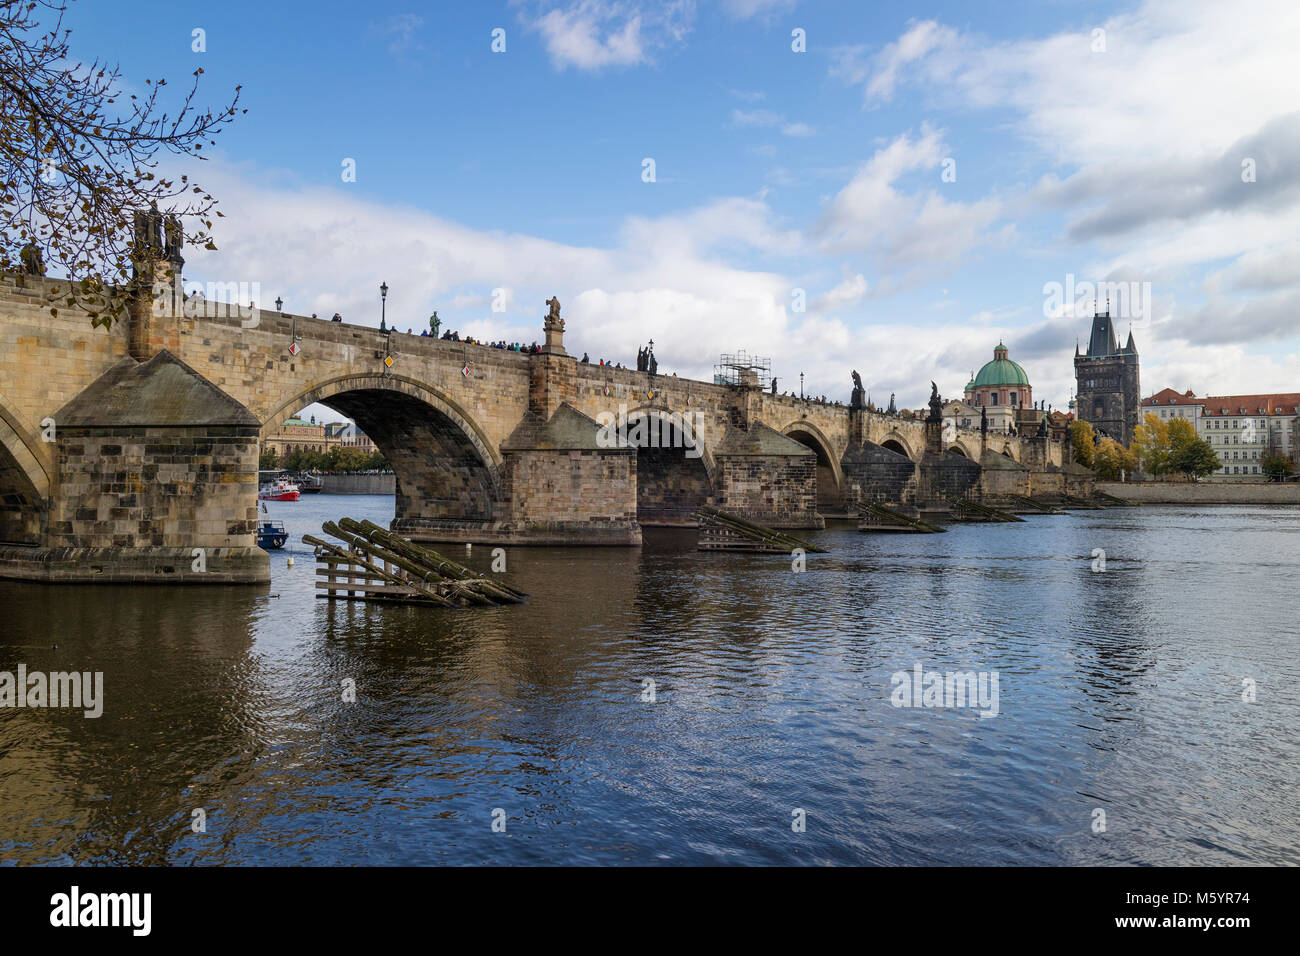 Praga, Repubblica Ceca - Ottobre 6, 2017: Charles Bridge, Sito Patrimonio Mondiale dell'UNESCO, il ponte pedonale sul fiume Vltava con al termine il BRI Foto Stock